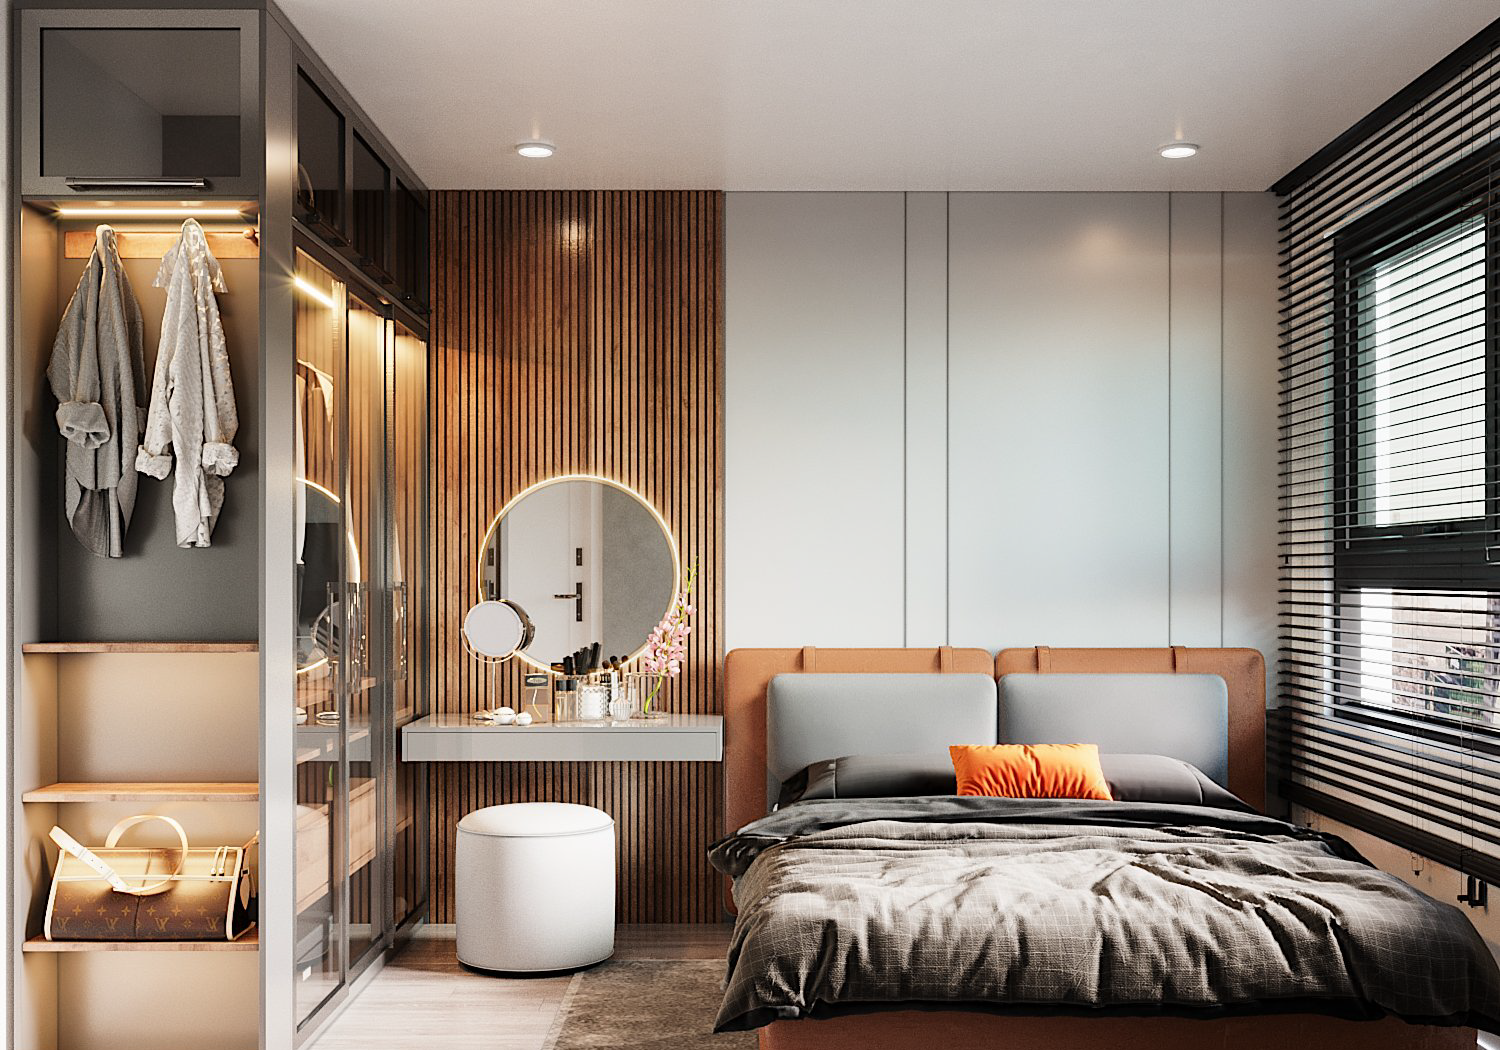 Phòng ngủ master toát lên vẻ sang trọng, trang nhã với nội thất hiện đại, chất liệu cao cấp. Gương tròn và đôn ngồi tạo điểm nhấn mềm mại, duyên dáng.